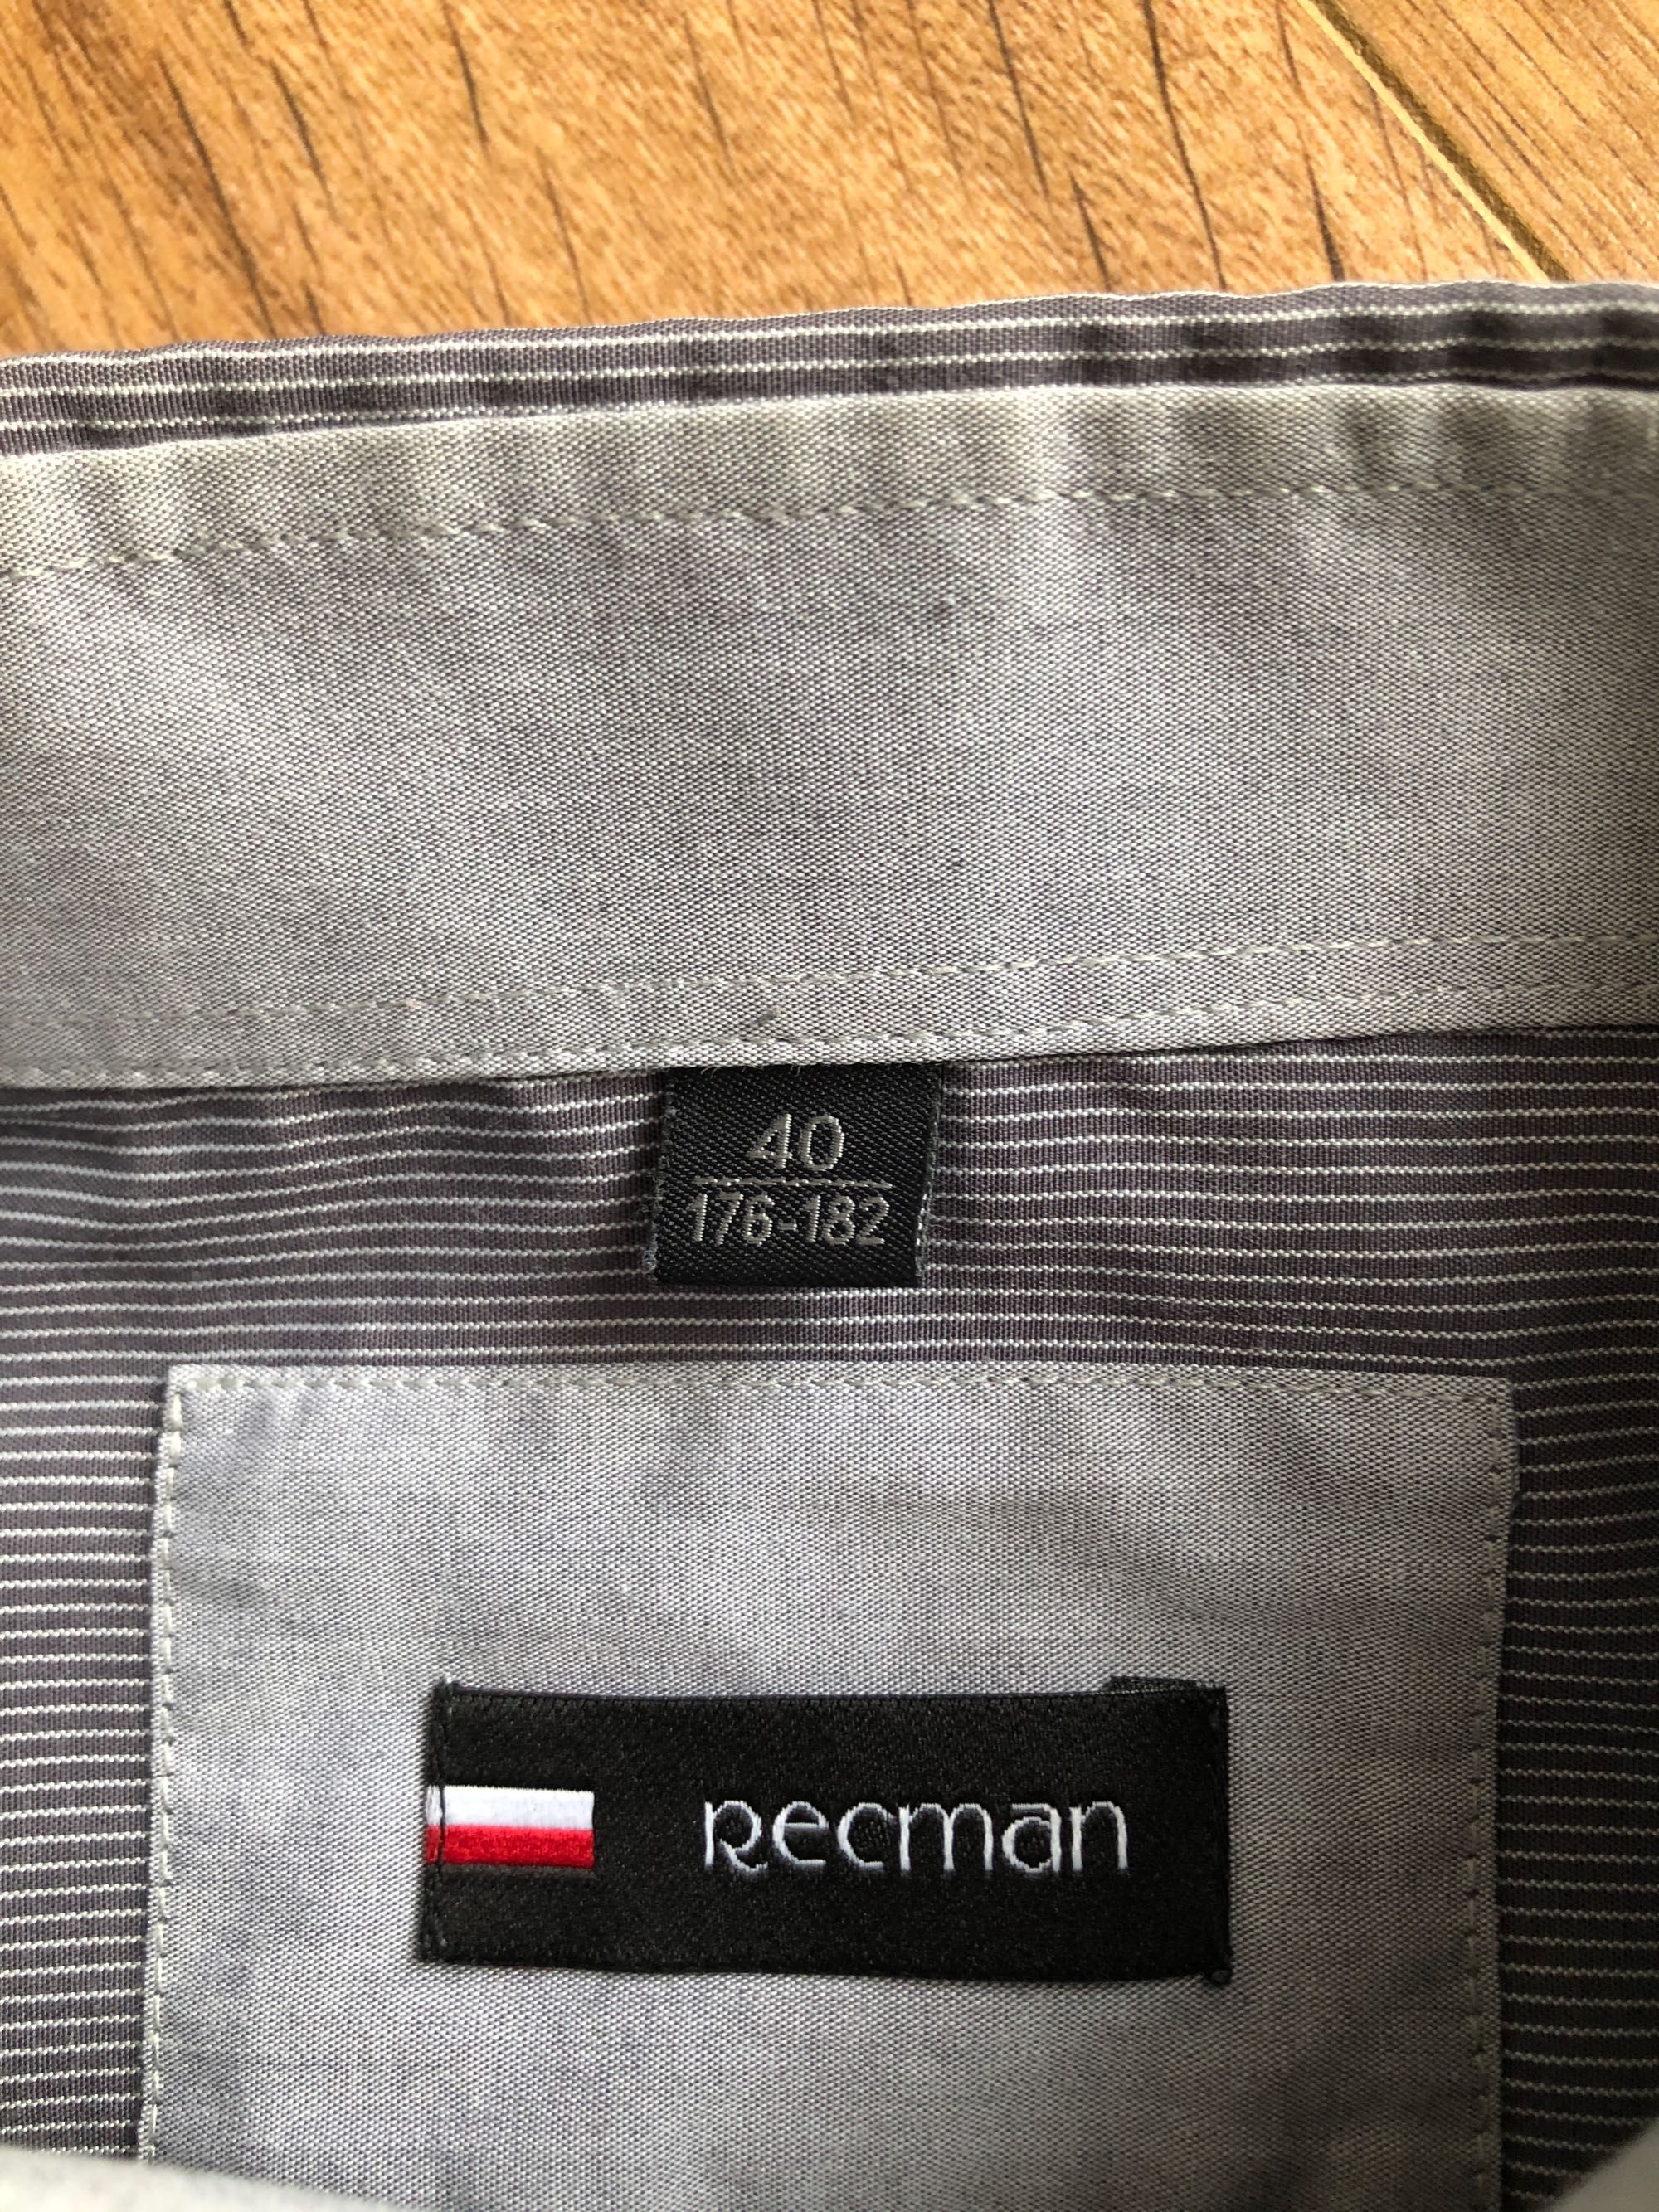 Szara koszula męska Recman 40